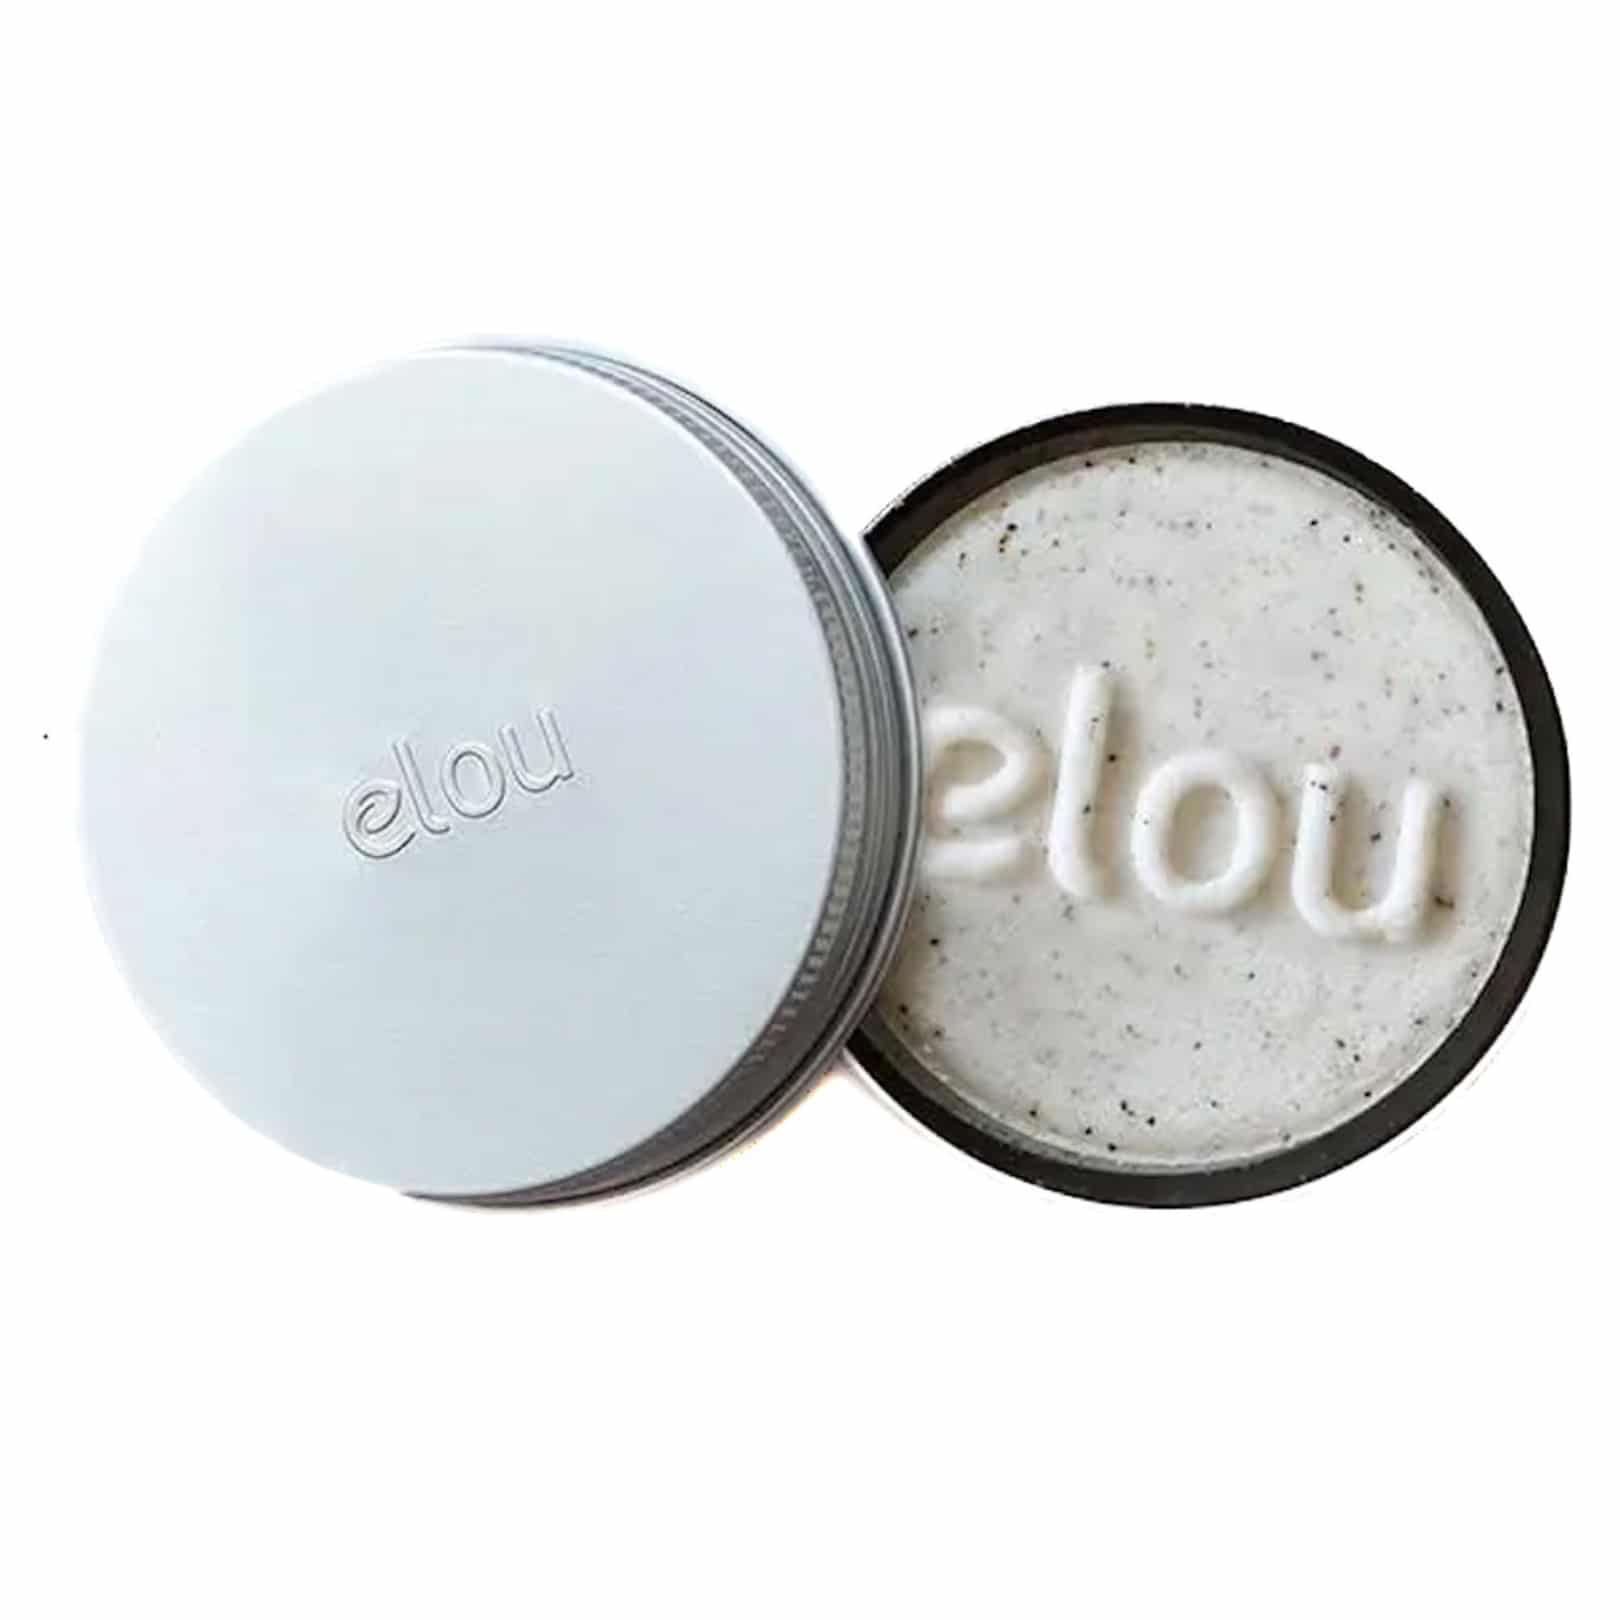 Elou-Shampoo-Bar-Healing-Hemp